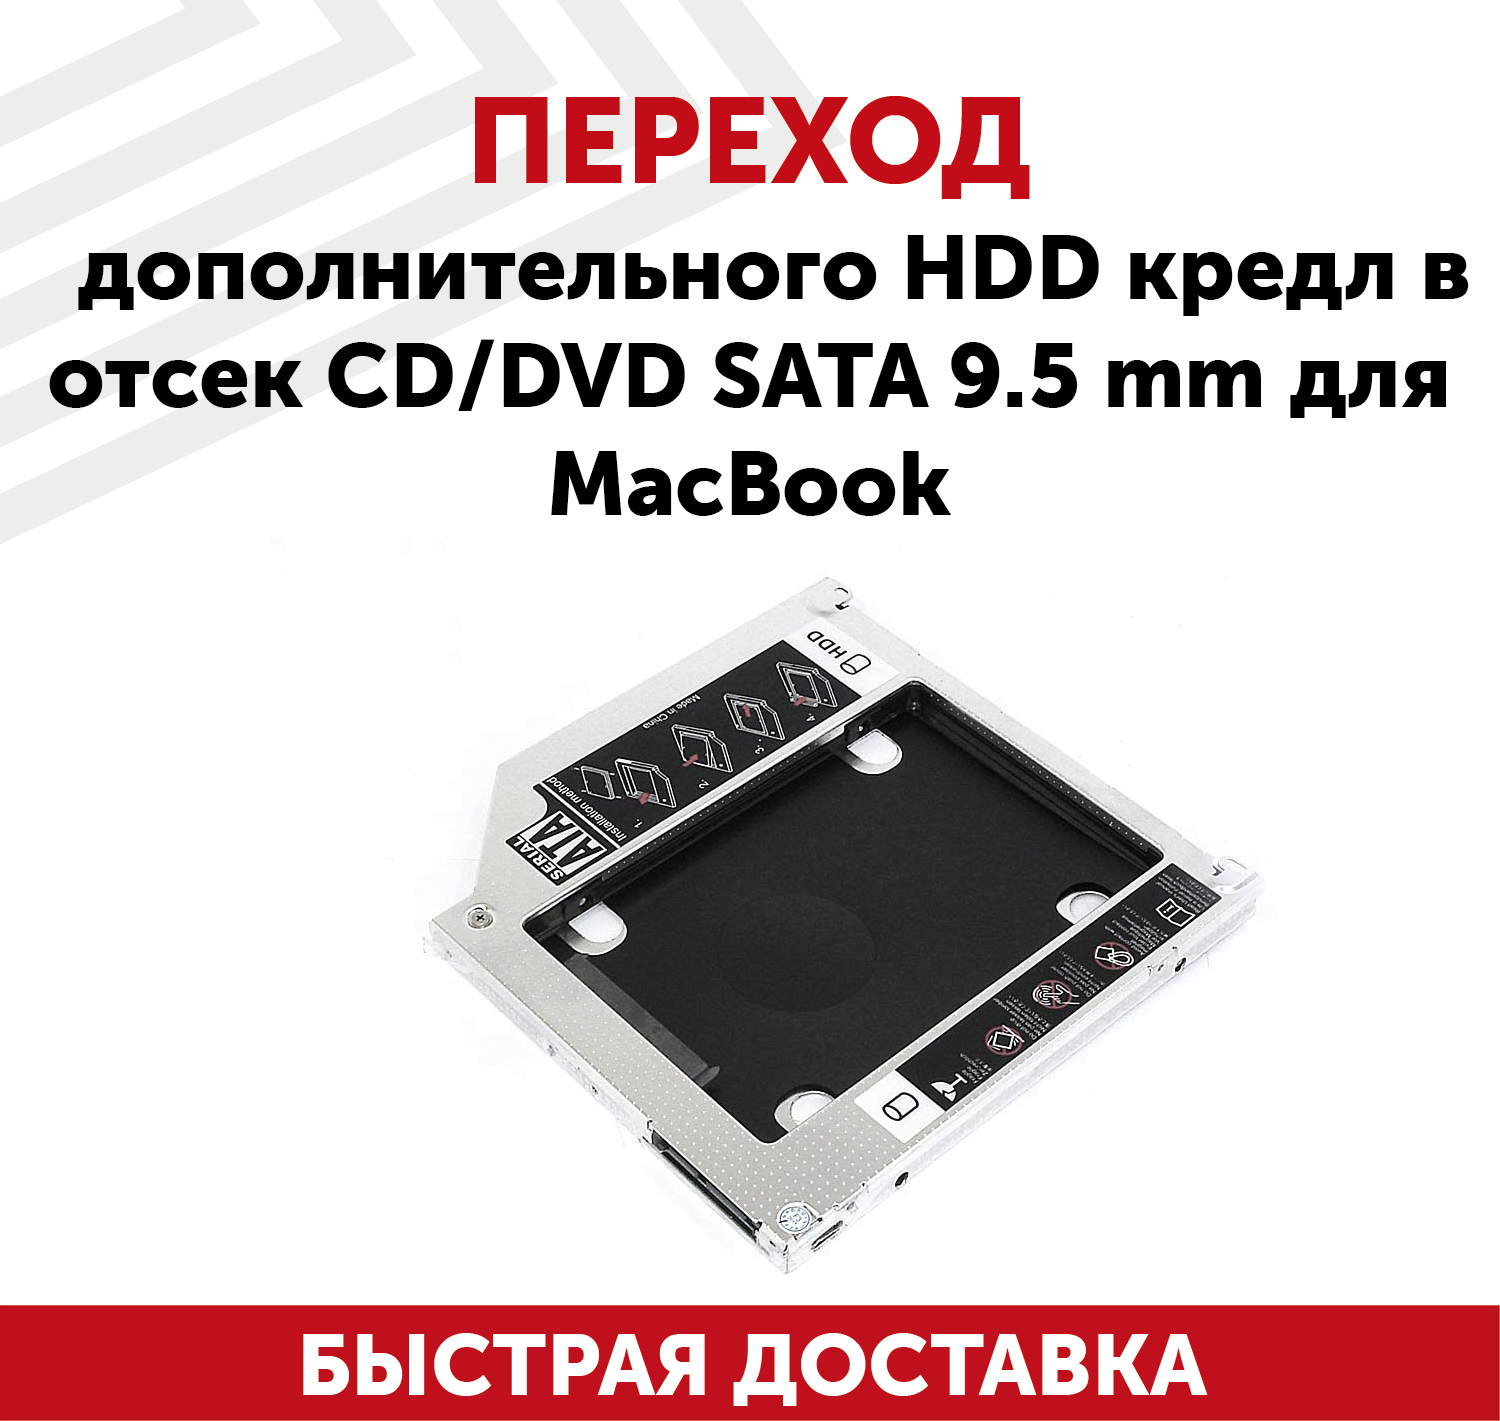 Переходник дополнительного HDD кредл в отсек CD/DVD SATA 9.5мм для ноутбука Apple MacBook